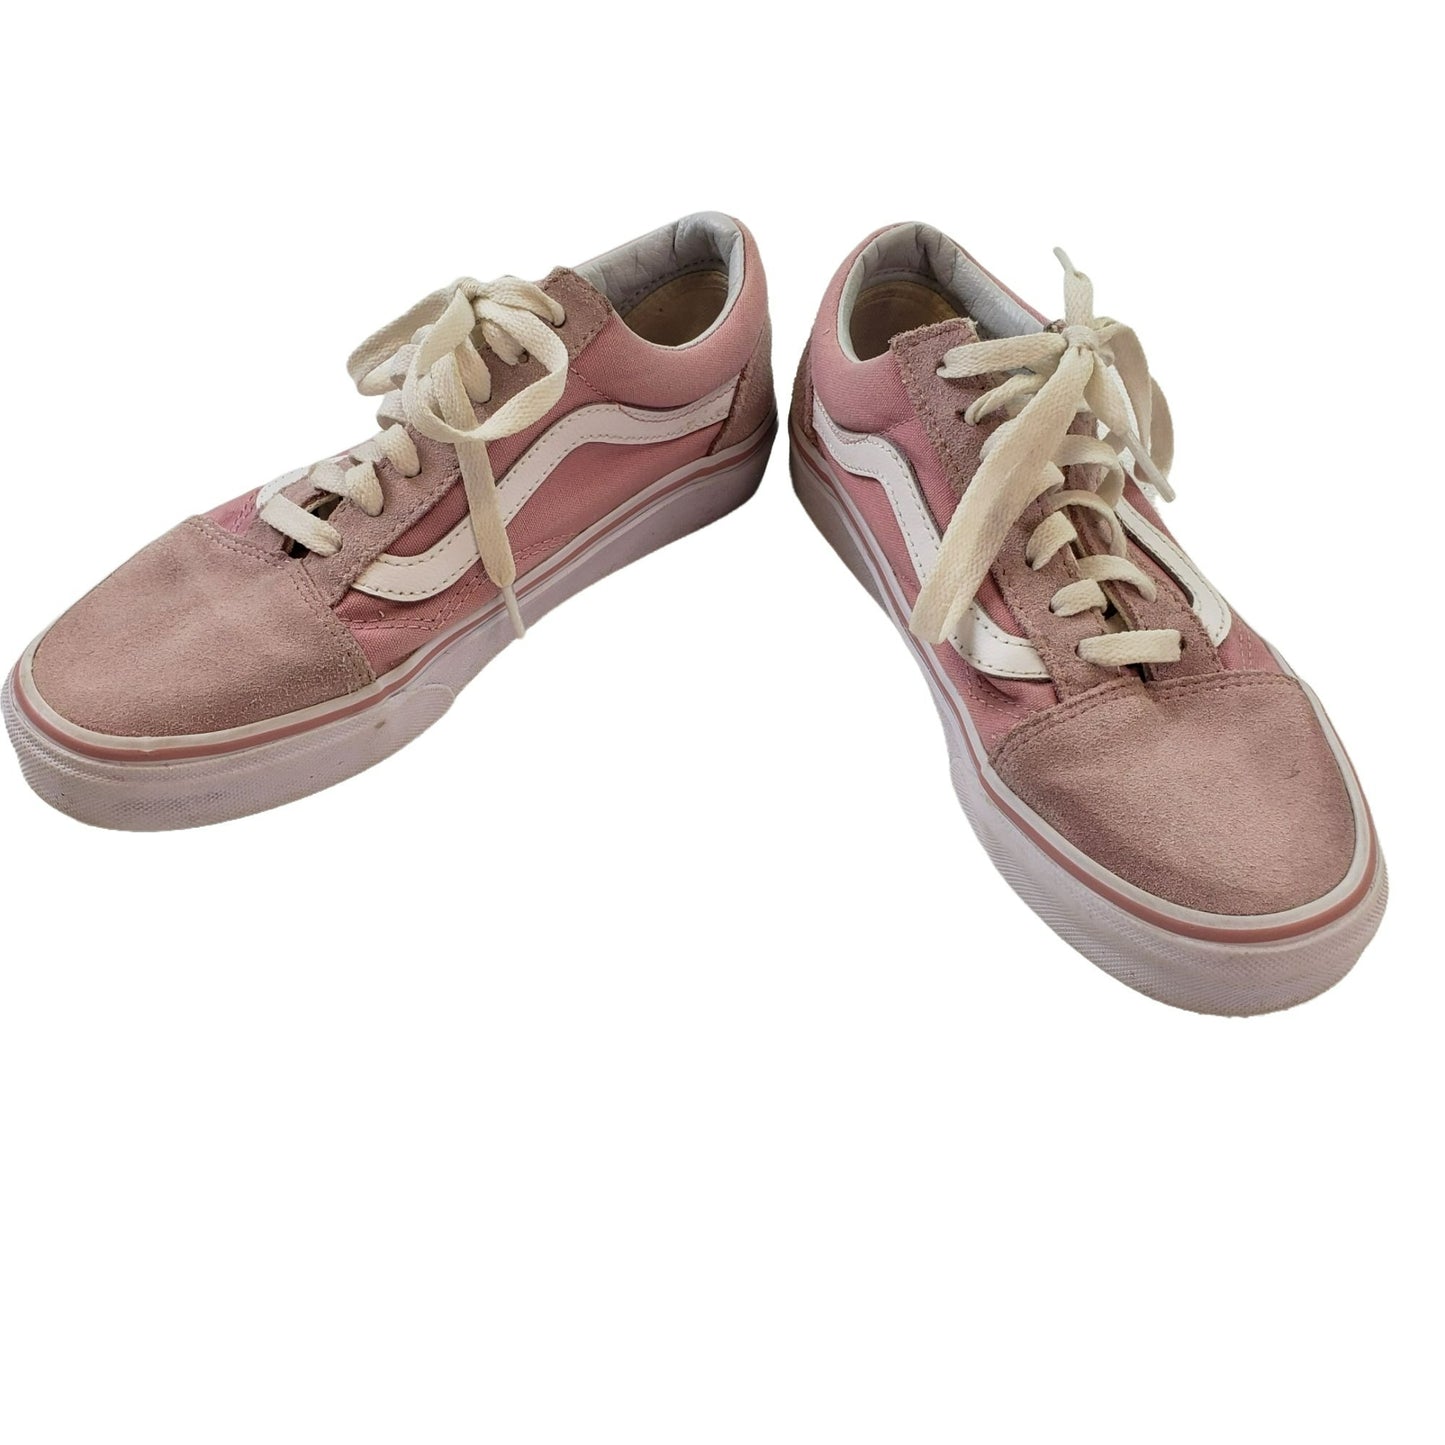 Vans Old Skool Pink Suede Trim Sneakers